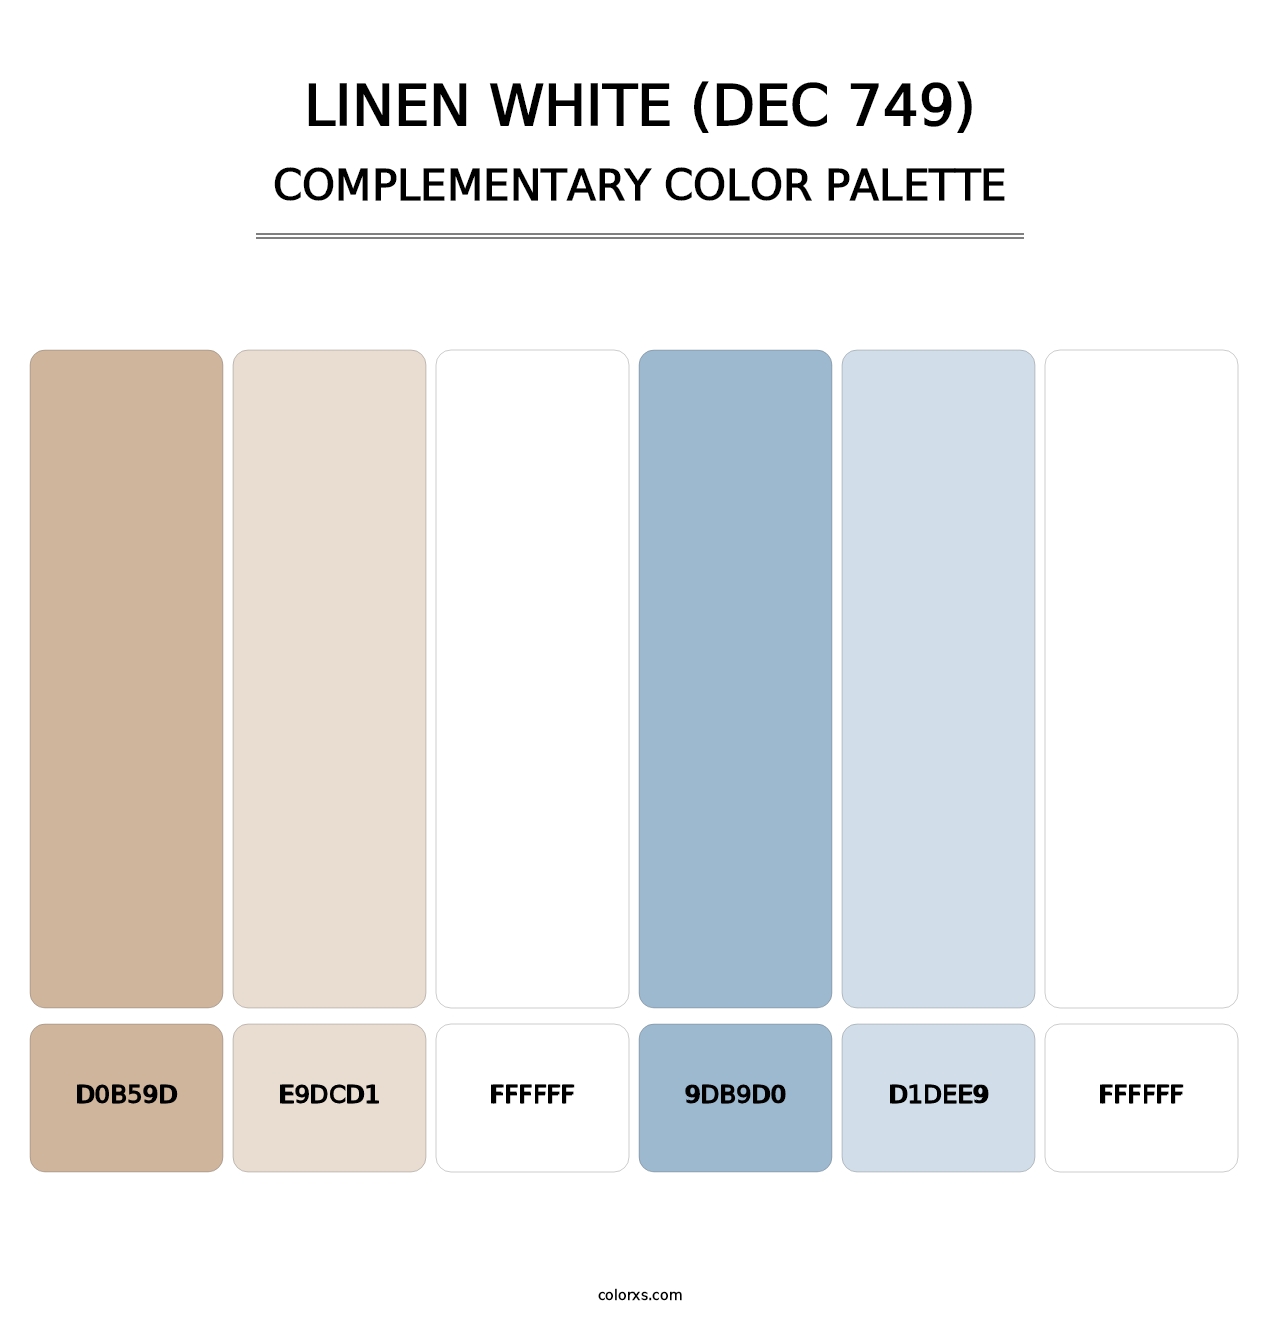 Linen White (DEC 749) - Complementary Color Palette